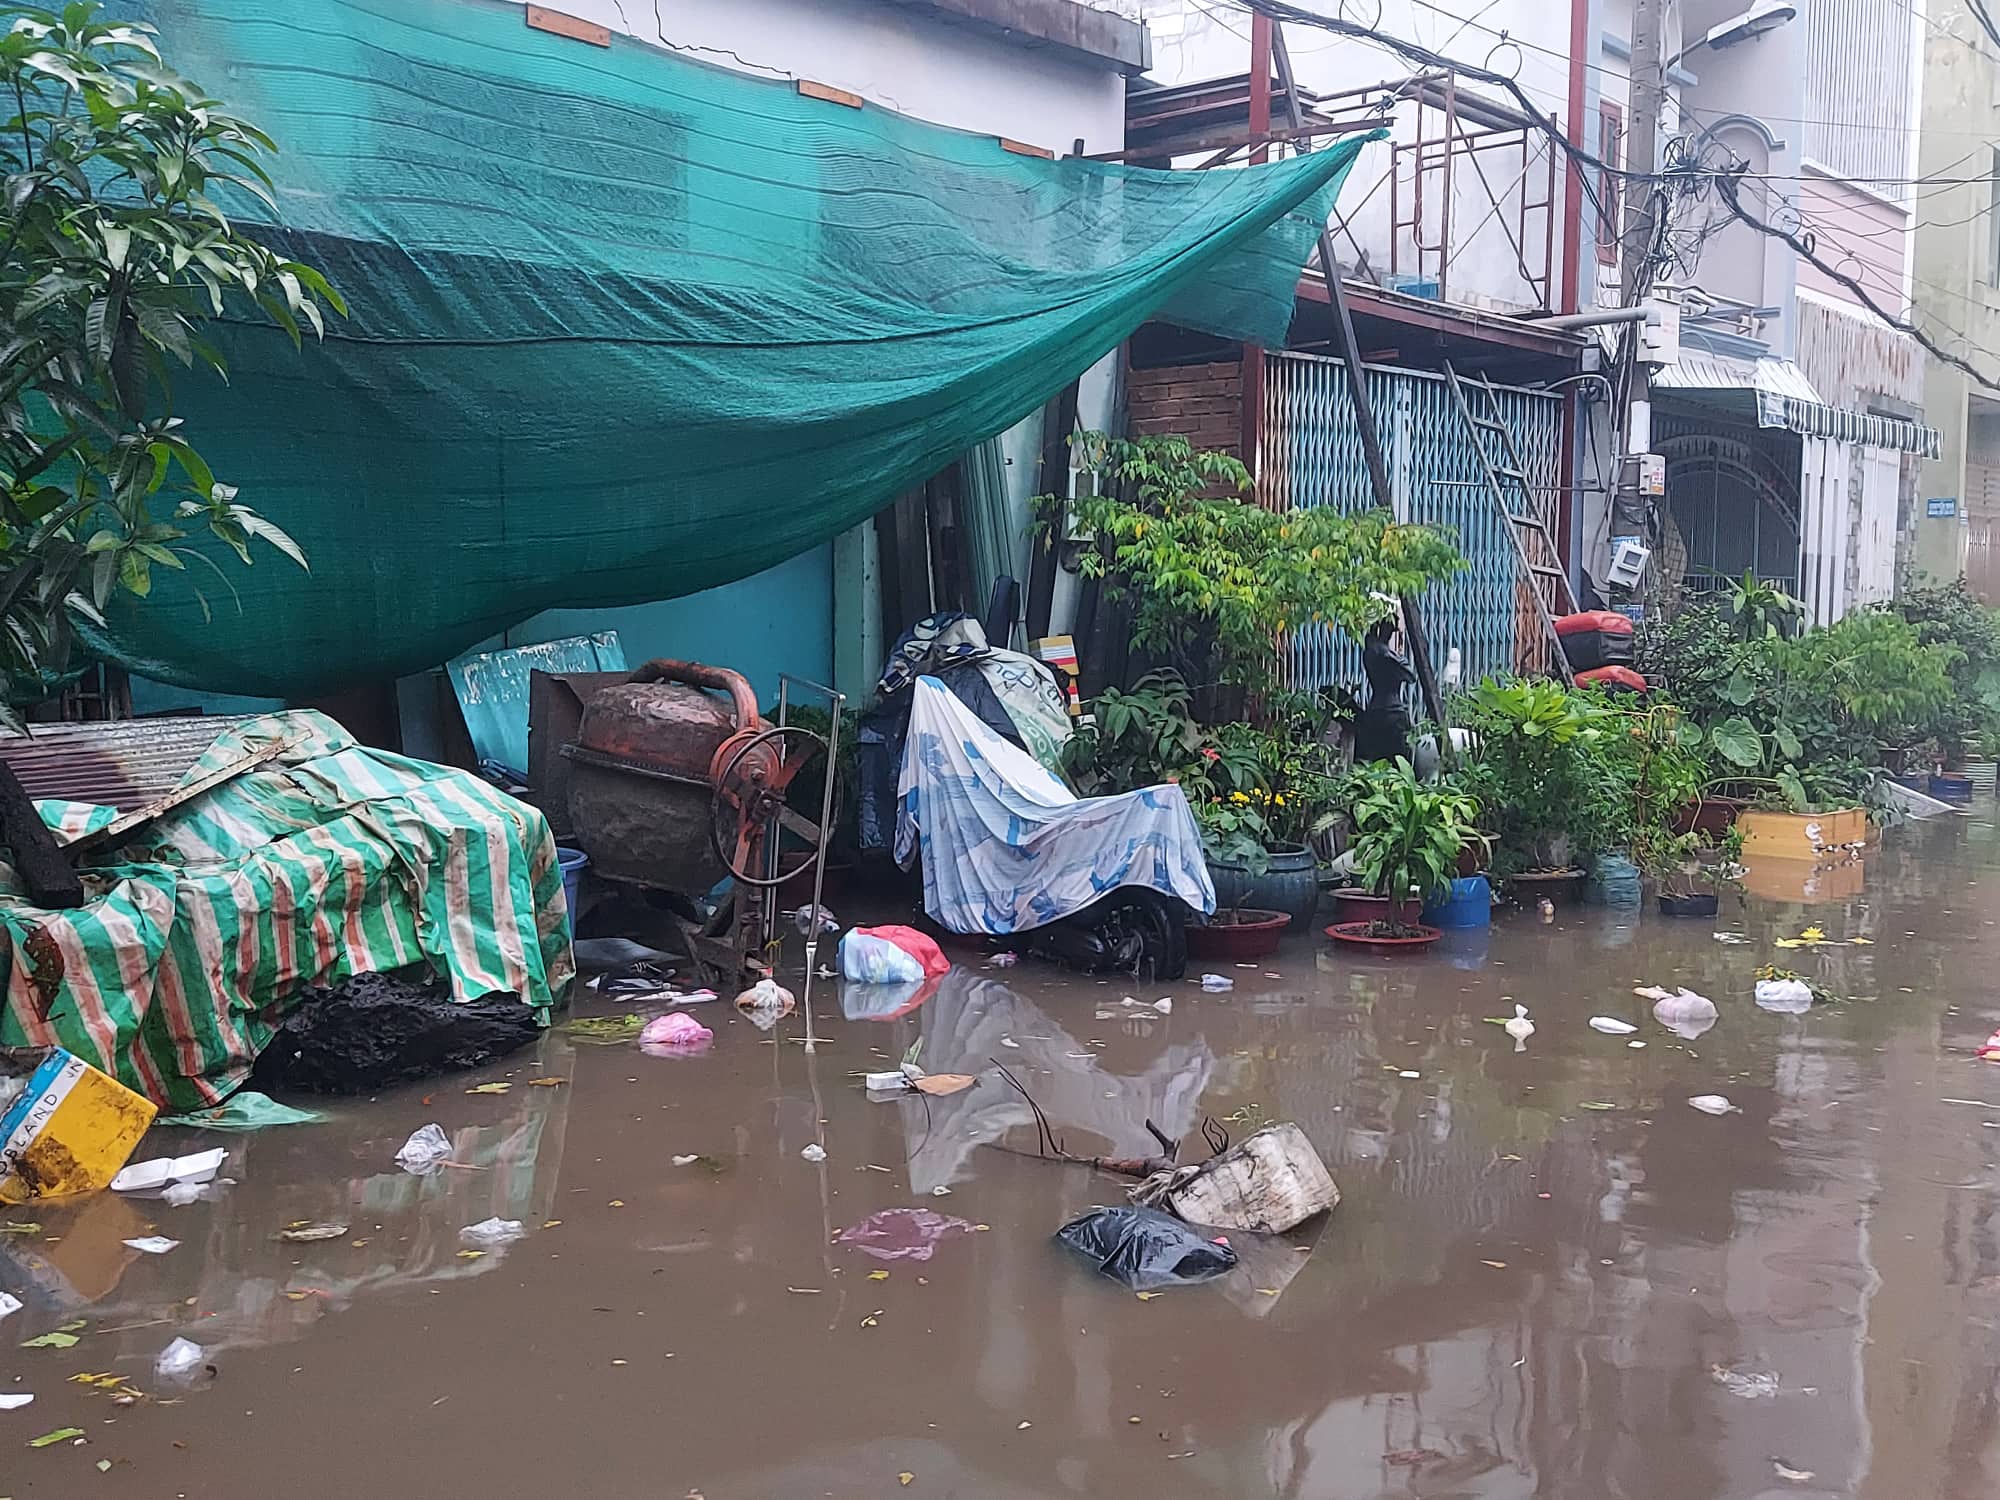 Sau trận mưa lớn kéo dài hàng giờ, hẻm 173 An Dương Vương, phường An Lạc, quận Bình Tân giờ đây ngoài nước còn có cả các loại rác thải